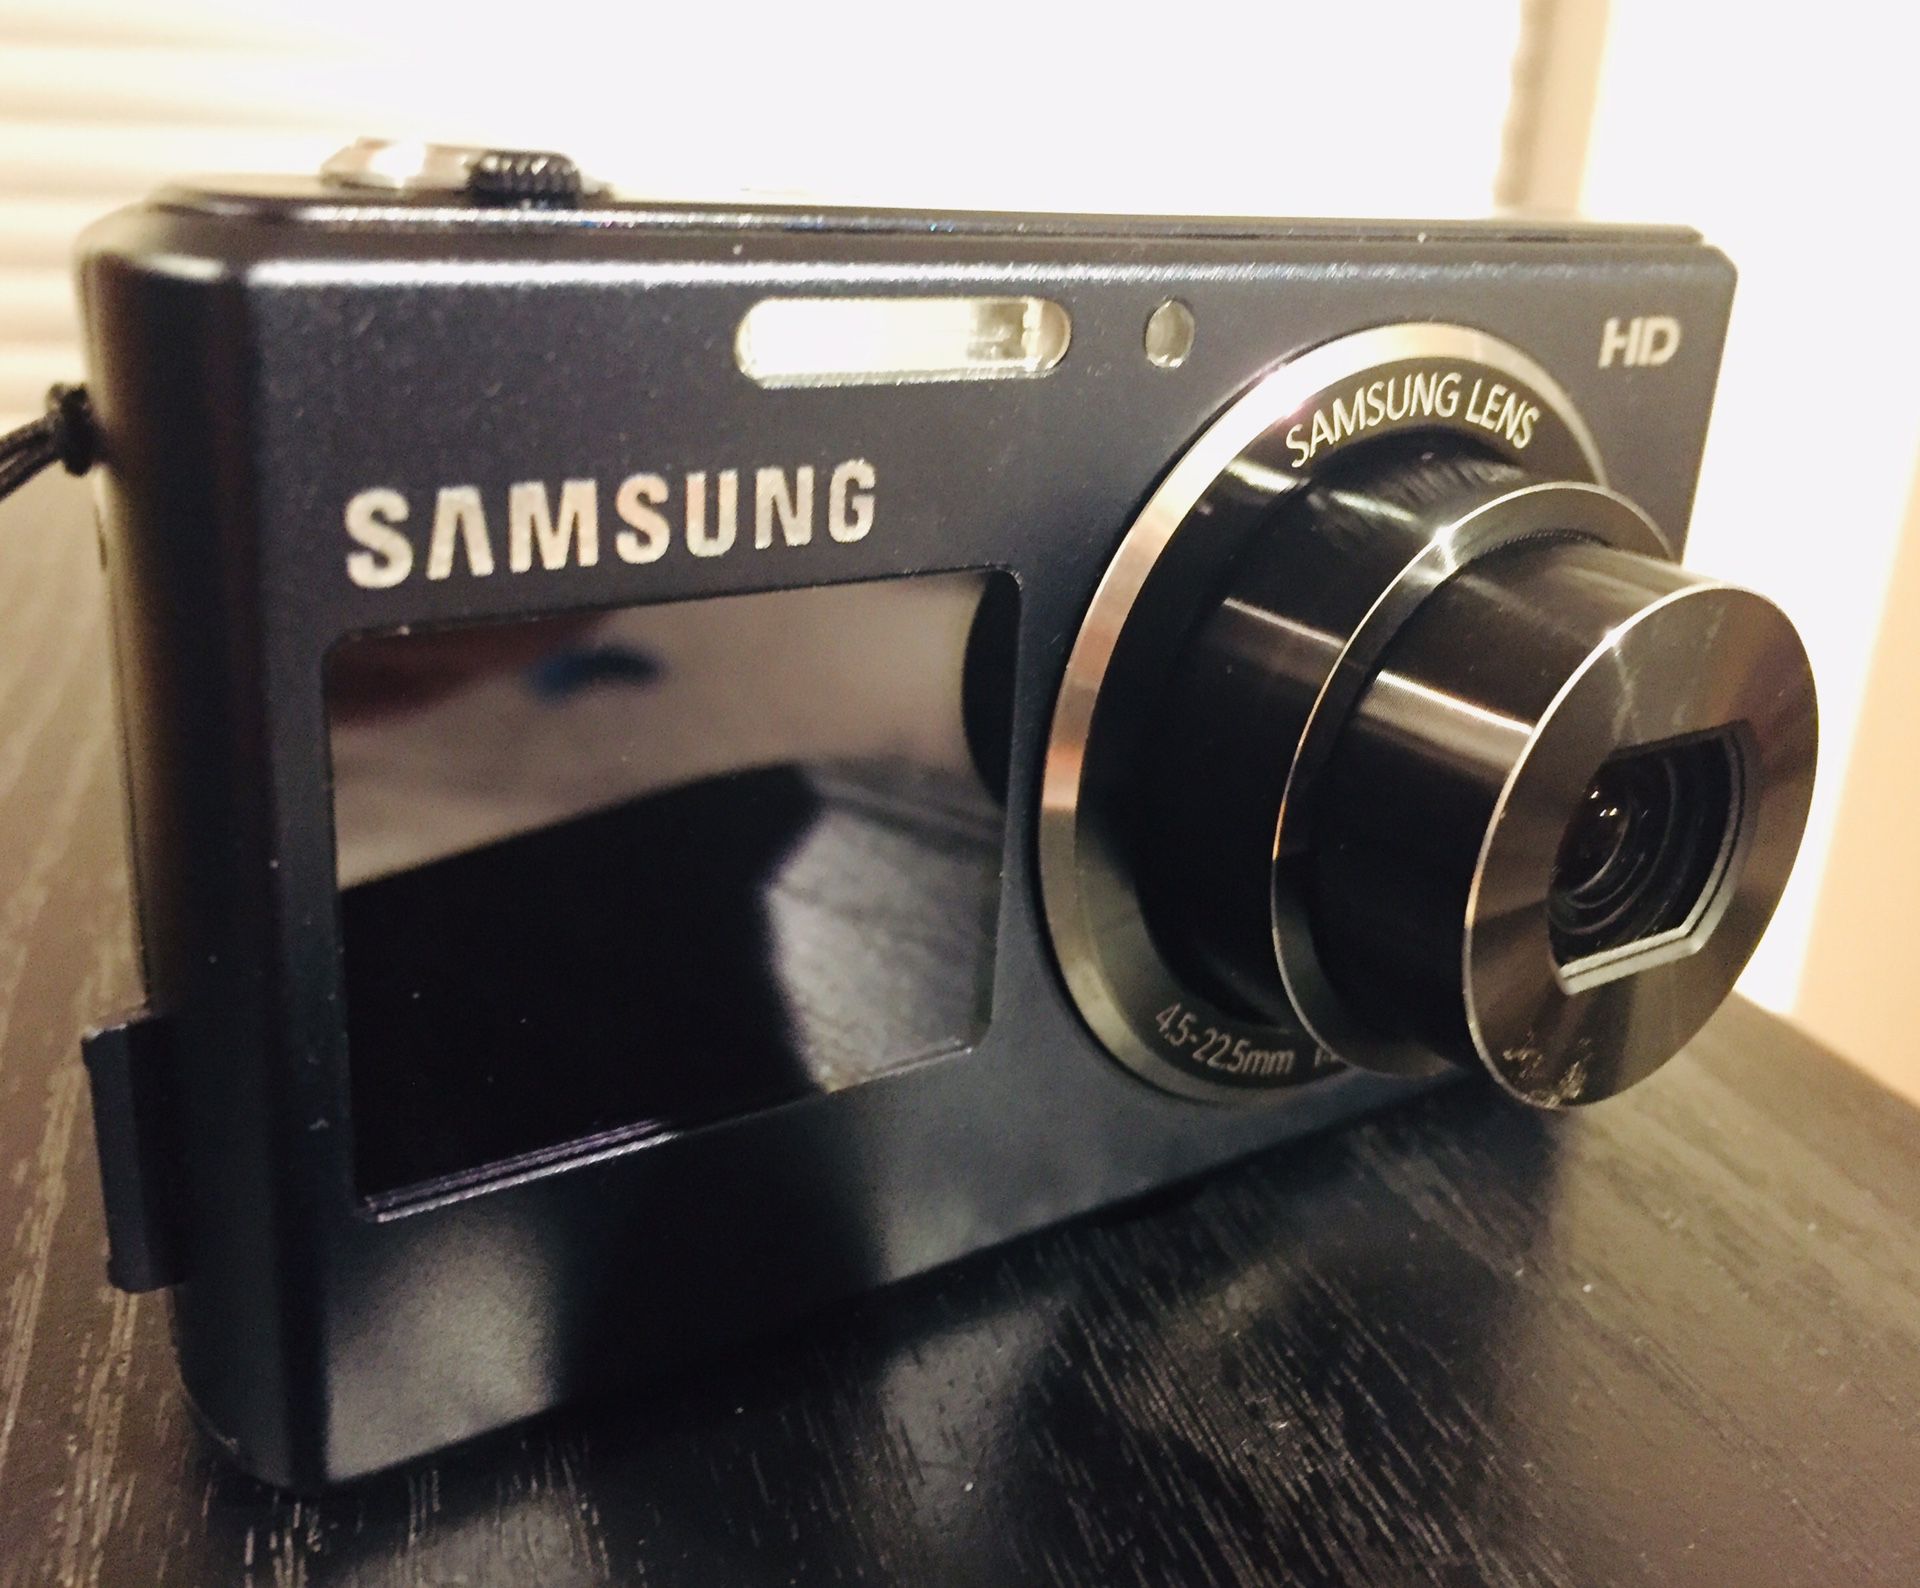 Samsung 16mm Digital Camera